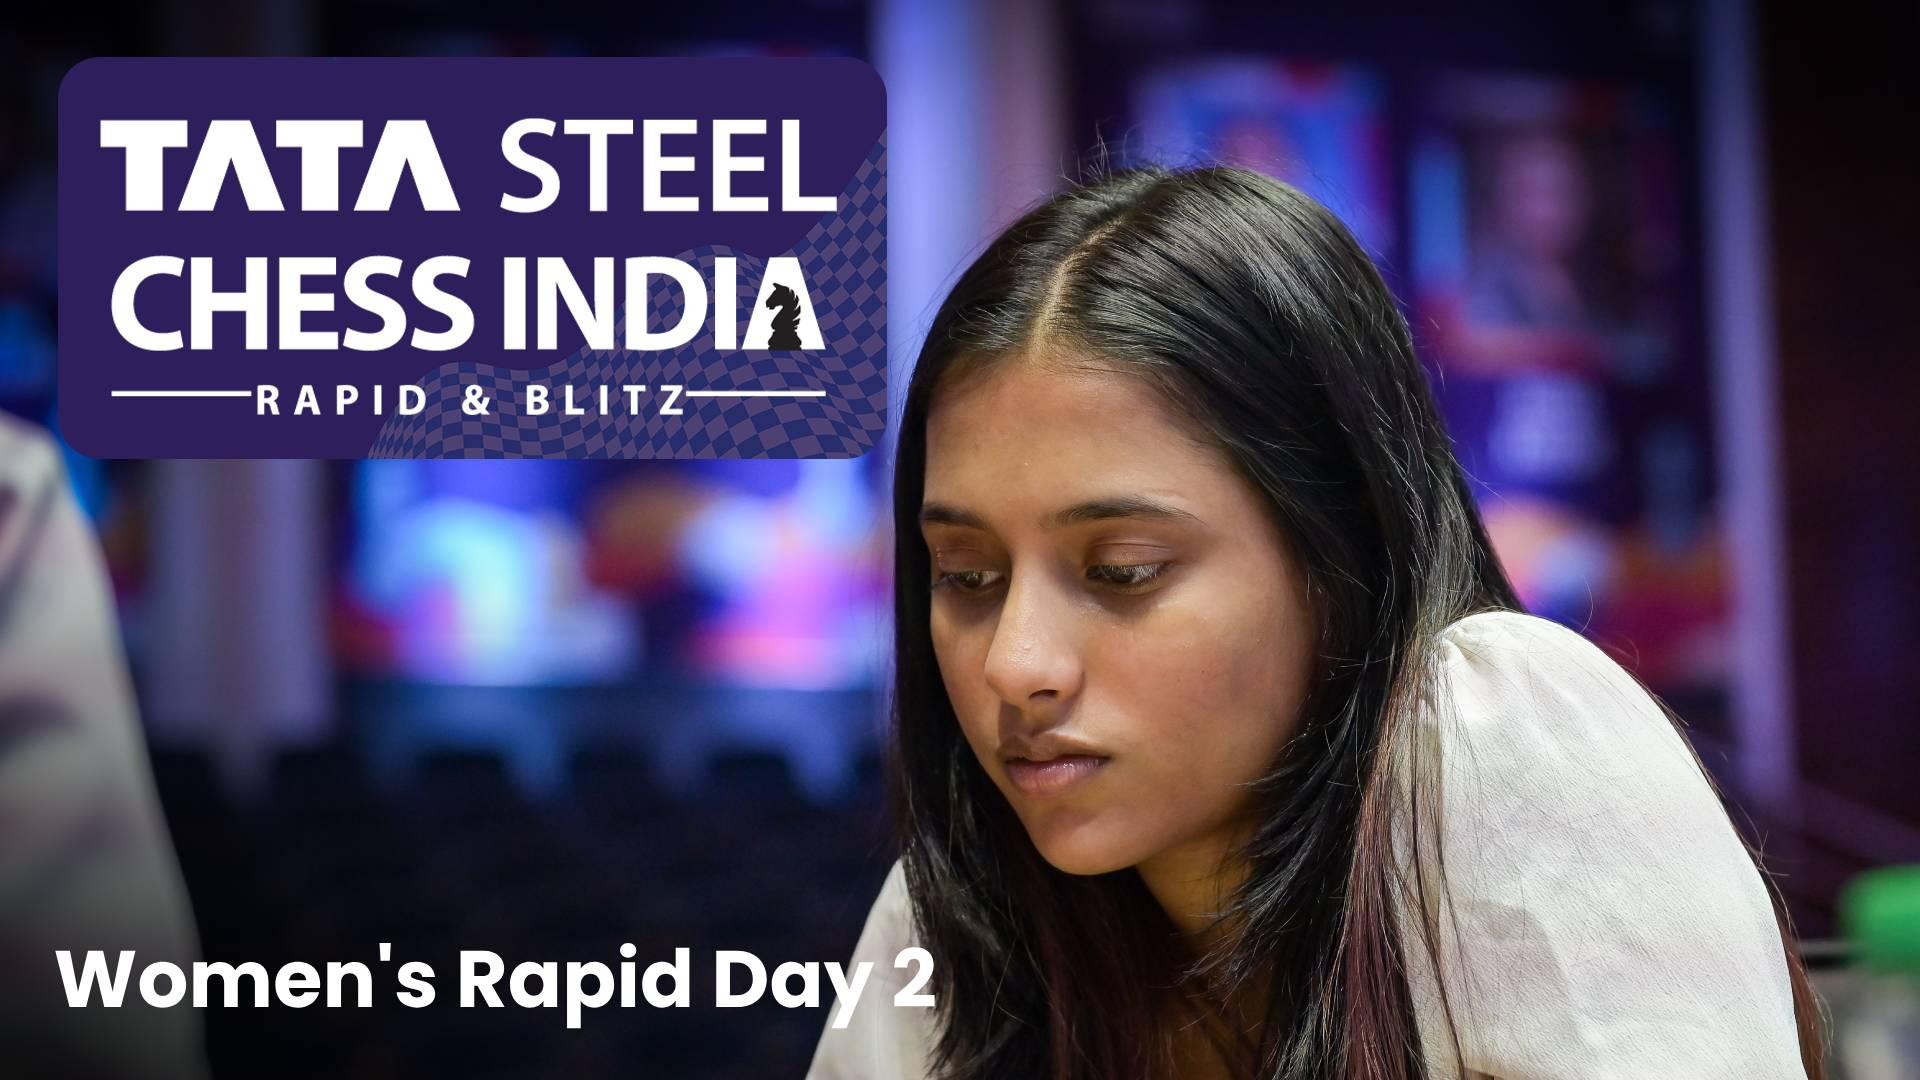 Tata Steel Rapid & Blitz: Live